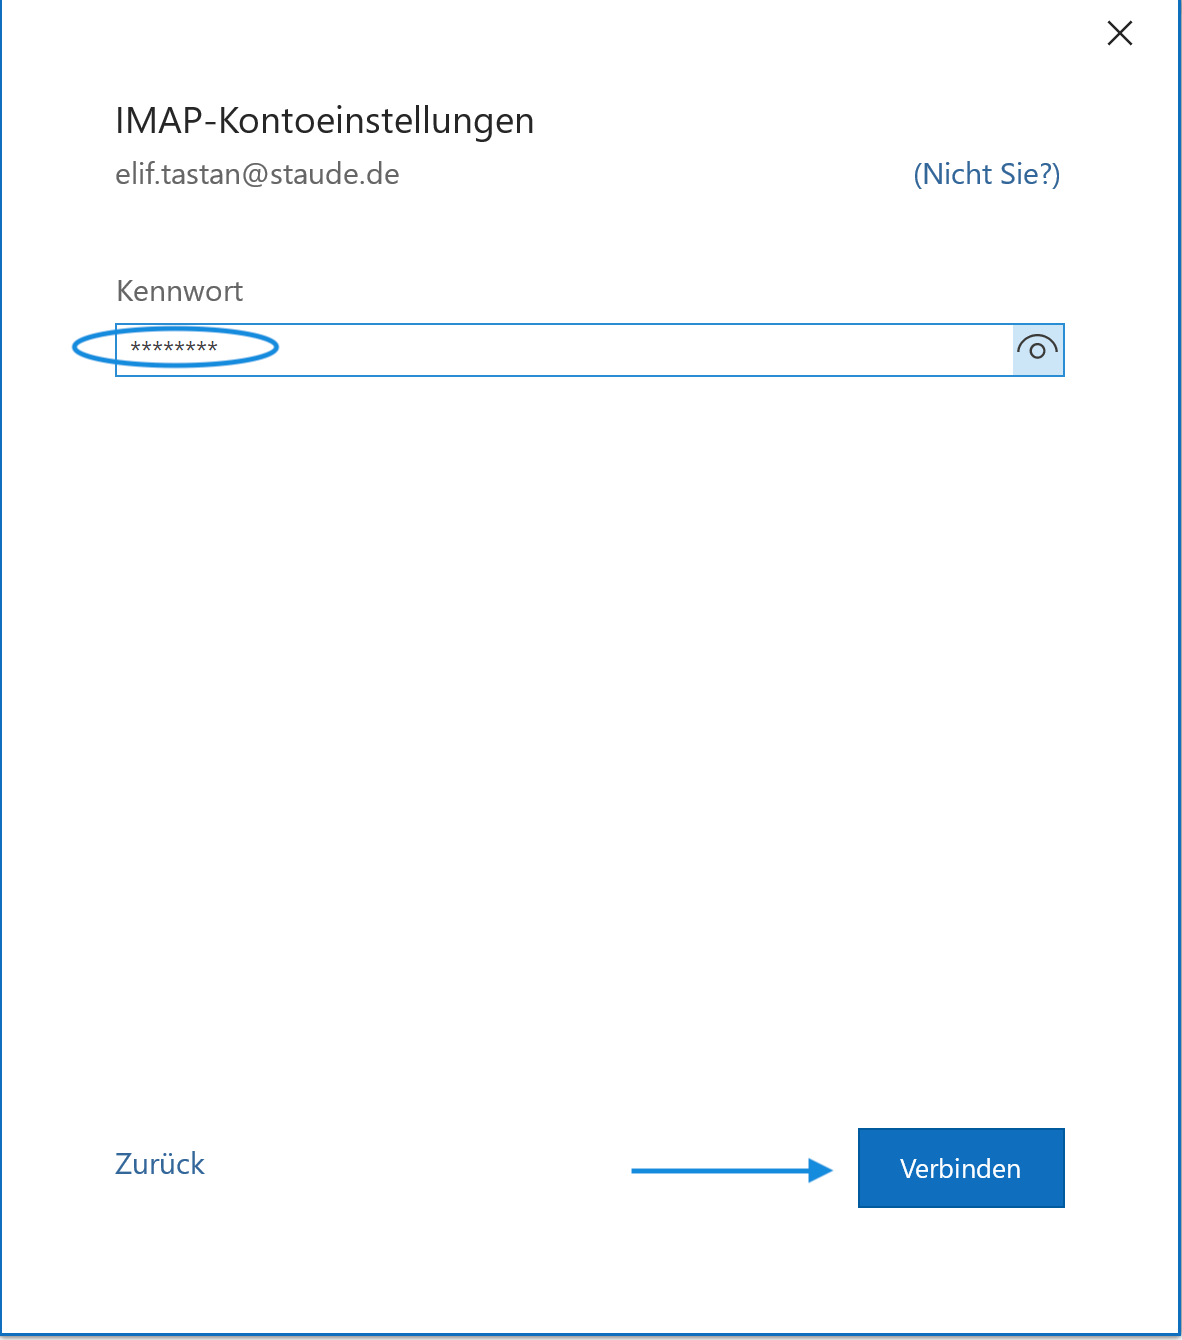 IMAP-Kontoeinstellungen